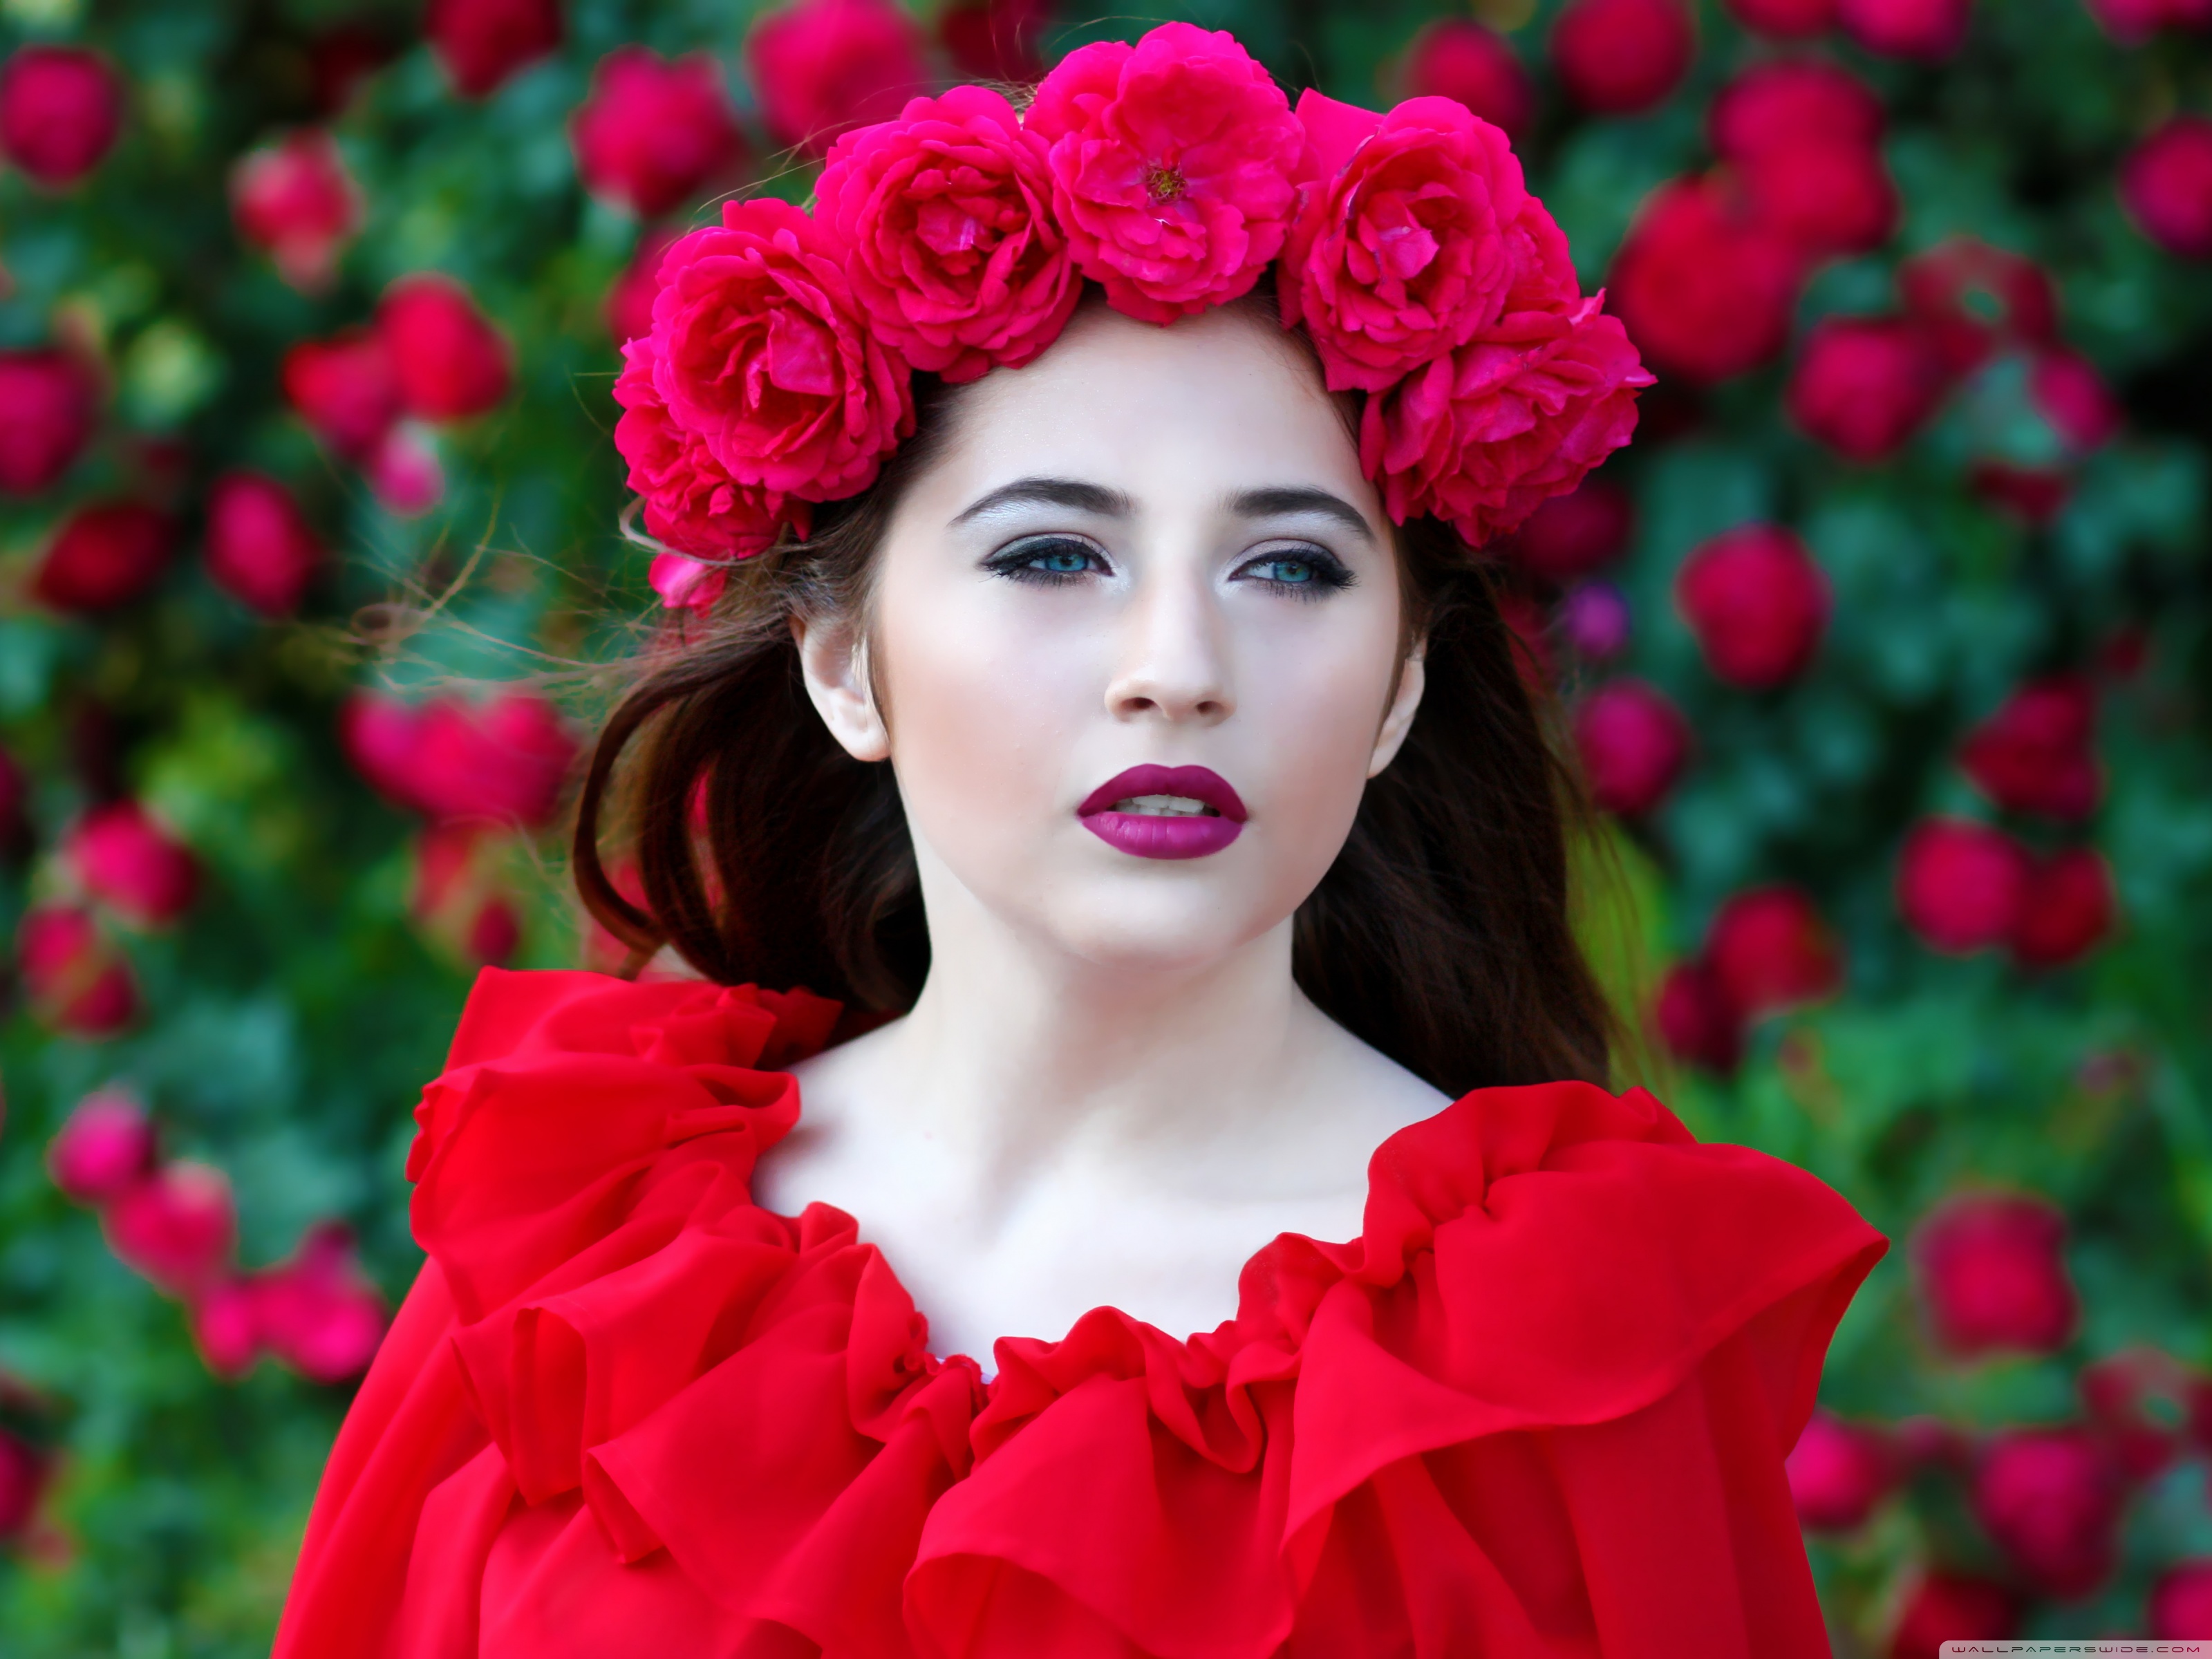 Woman In Red Dress Roses Wreath 4k HD Desktop Wallpaper